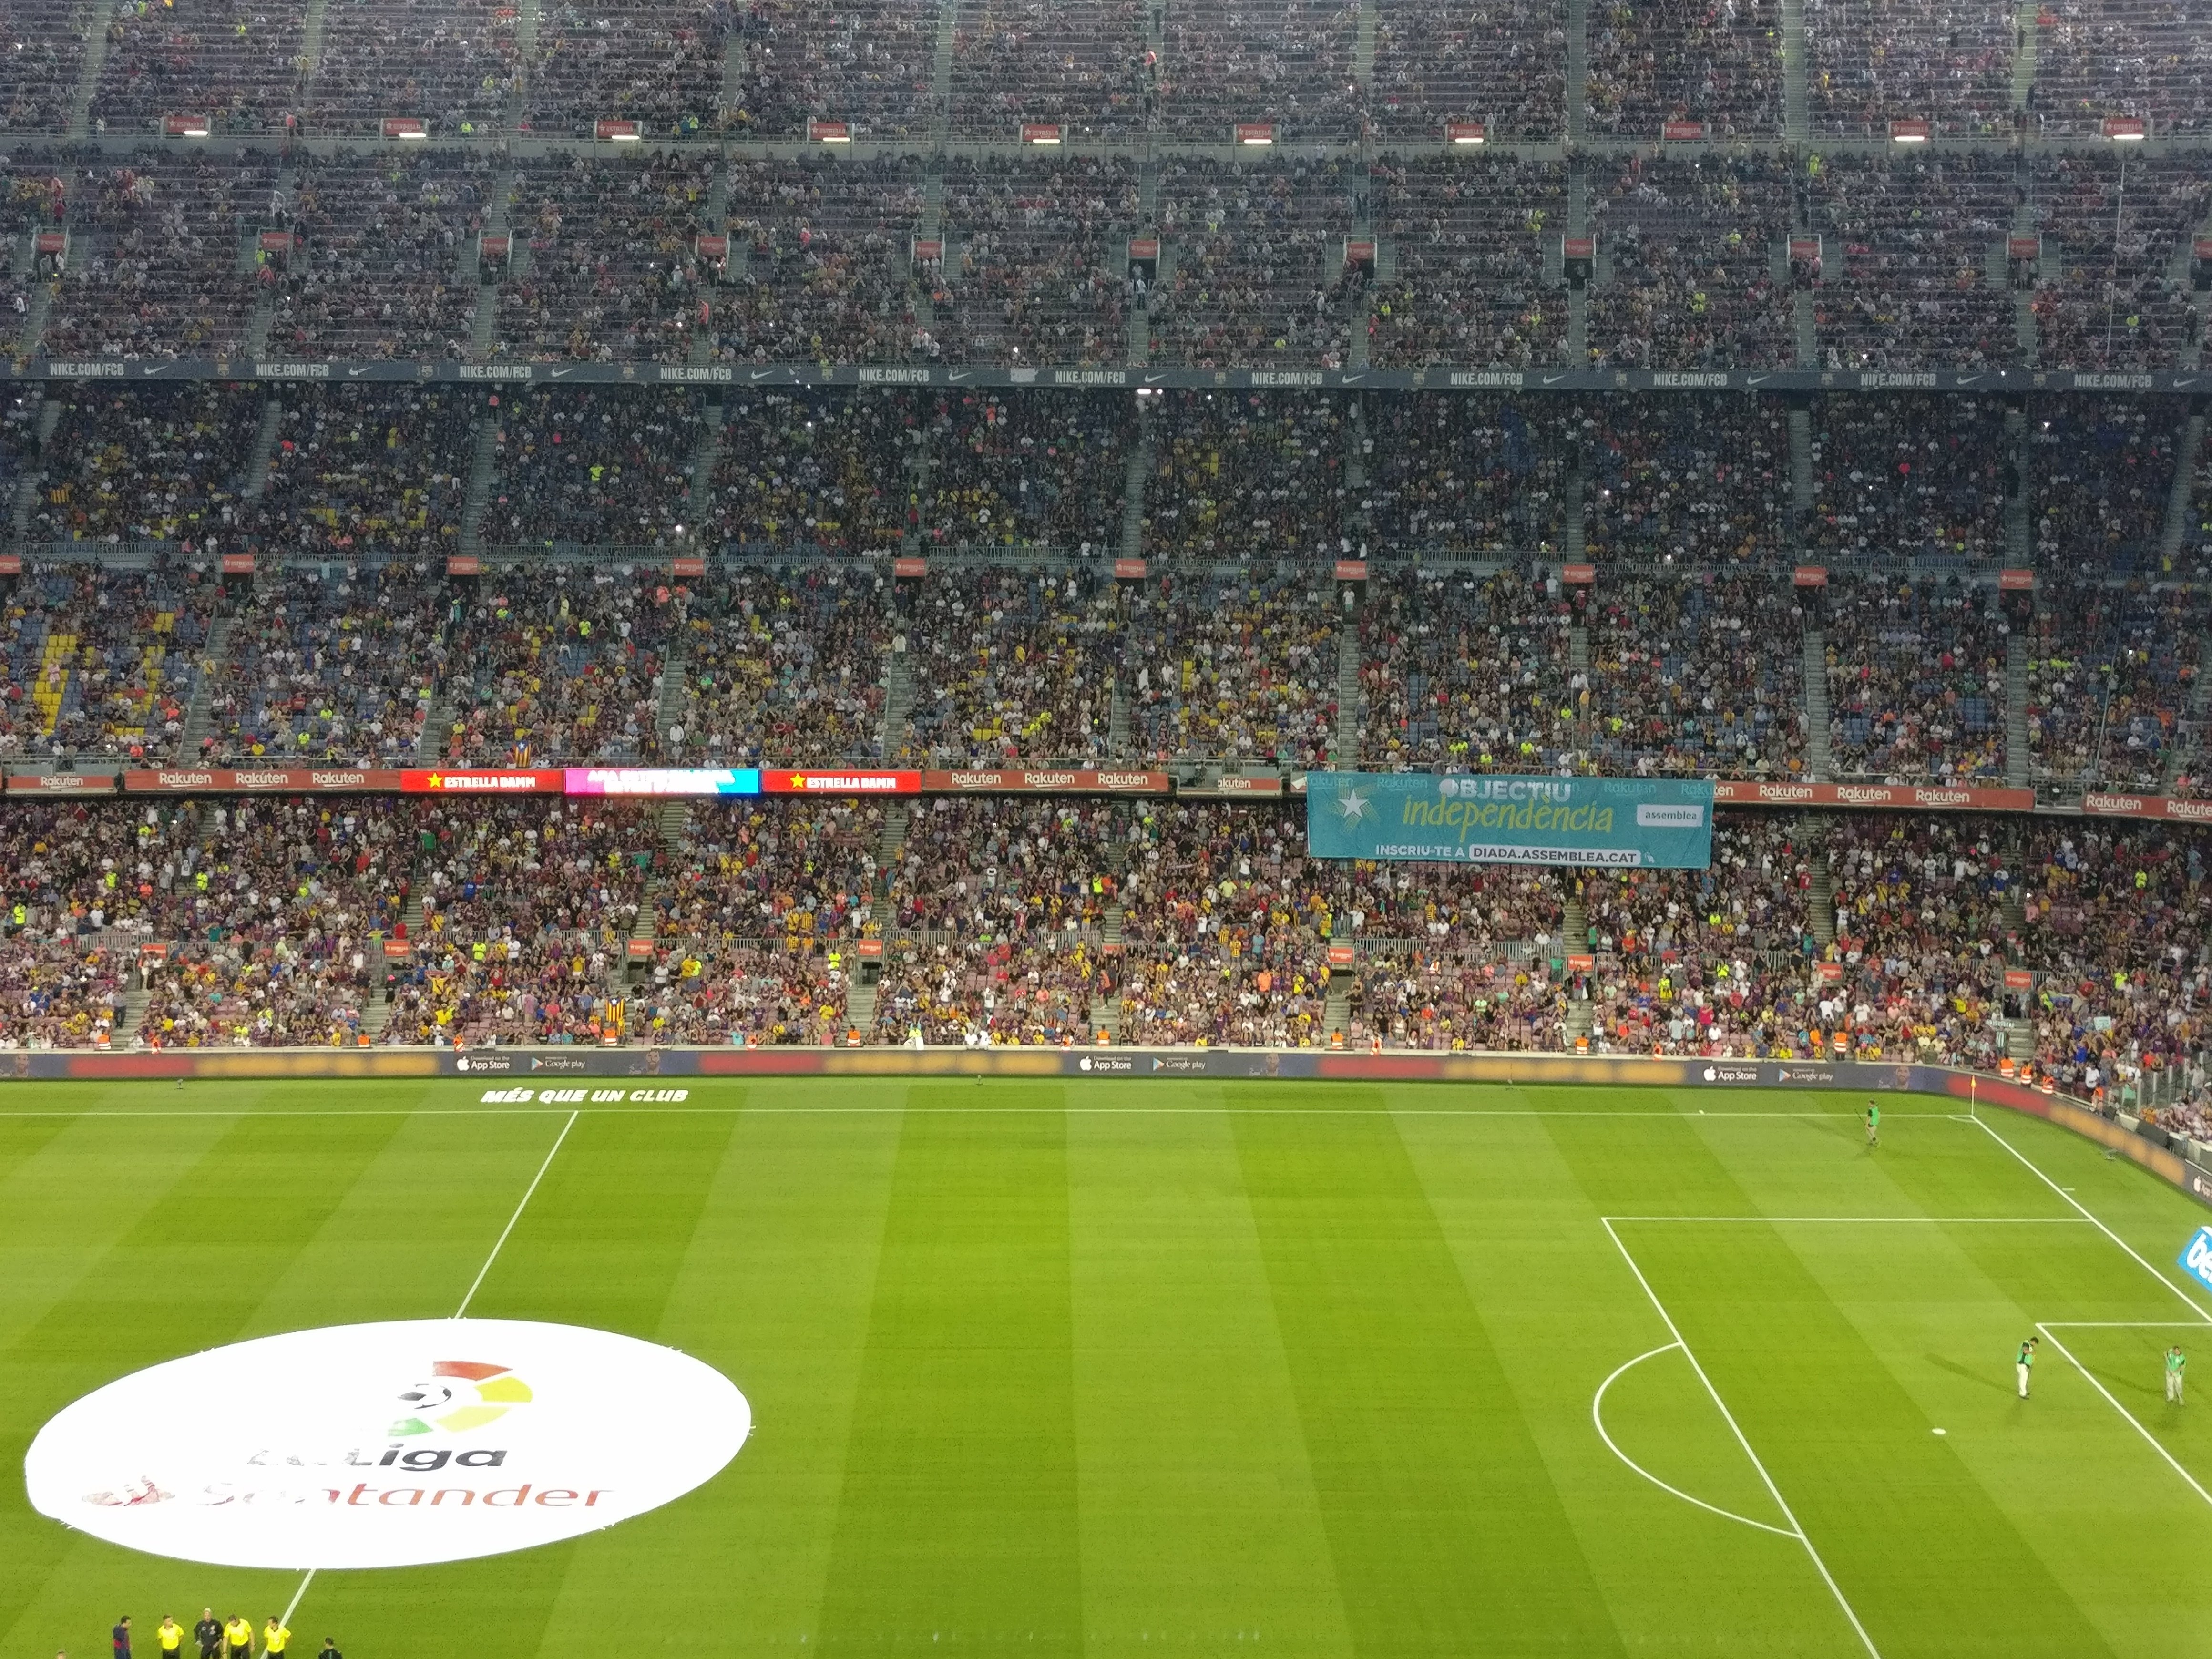 La pancarta del Camp Nou contra el Betis: "Objectiu independència"